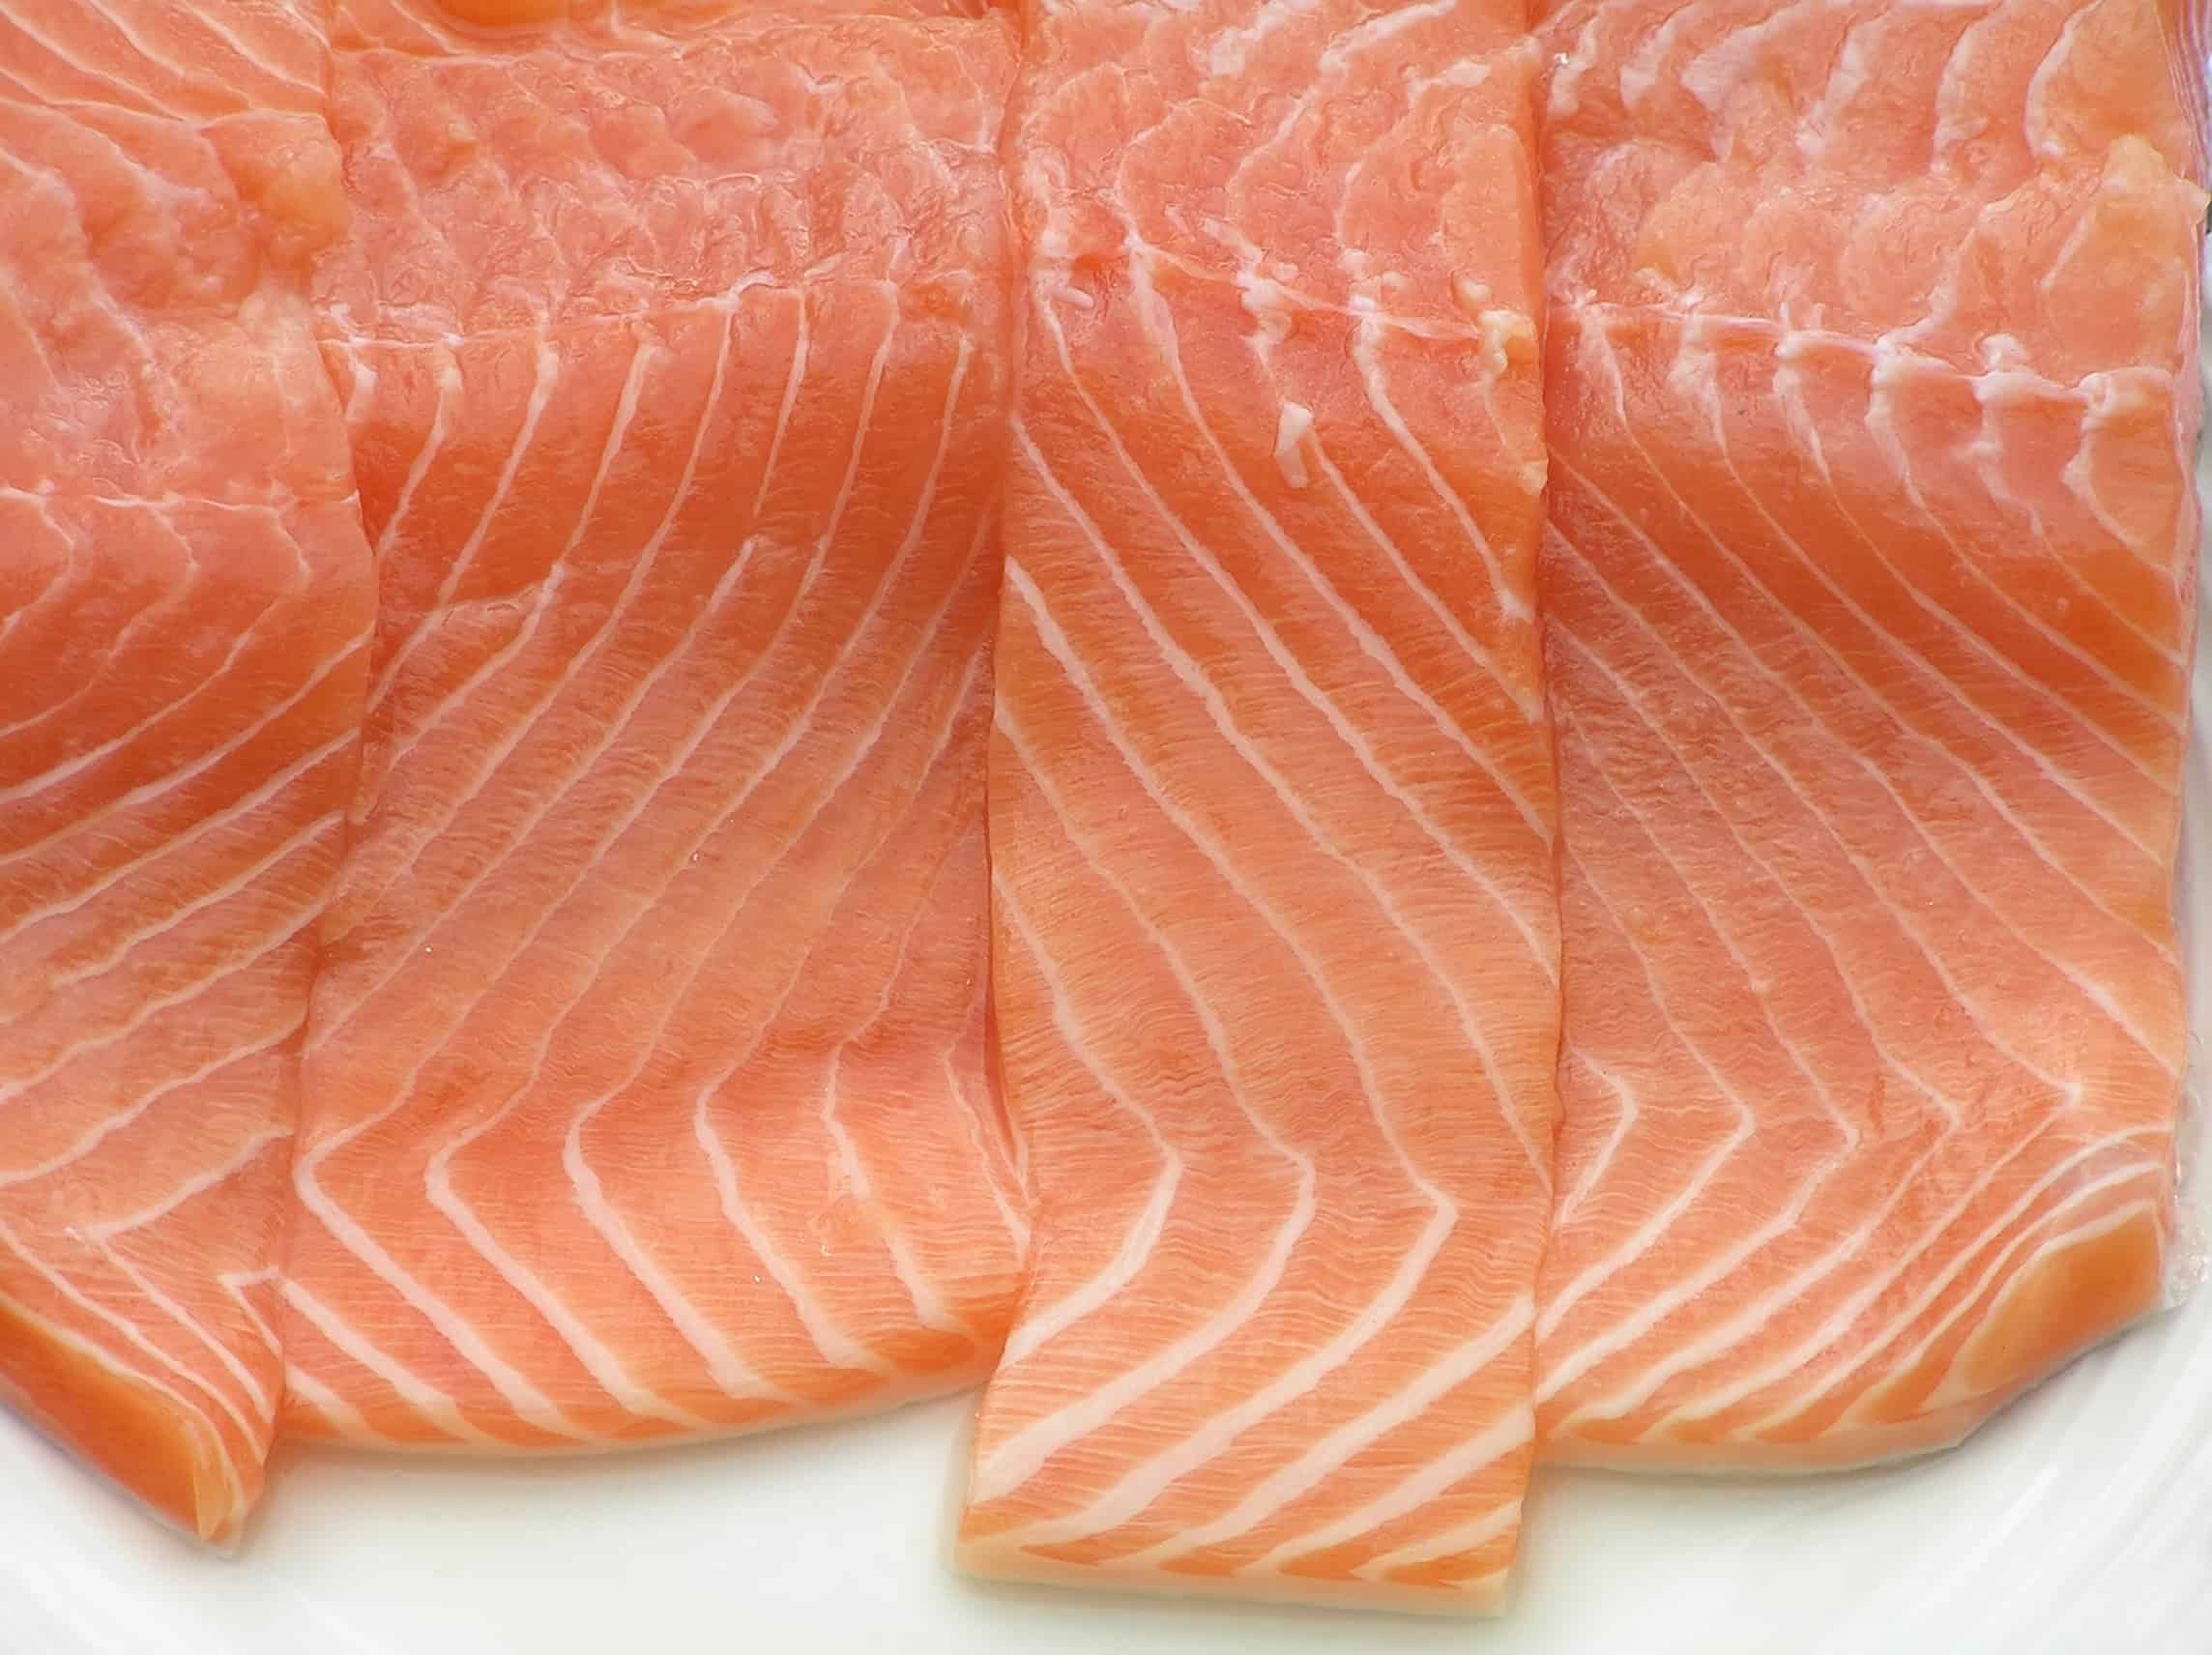 cut Atlantic Salmon filets side by side.